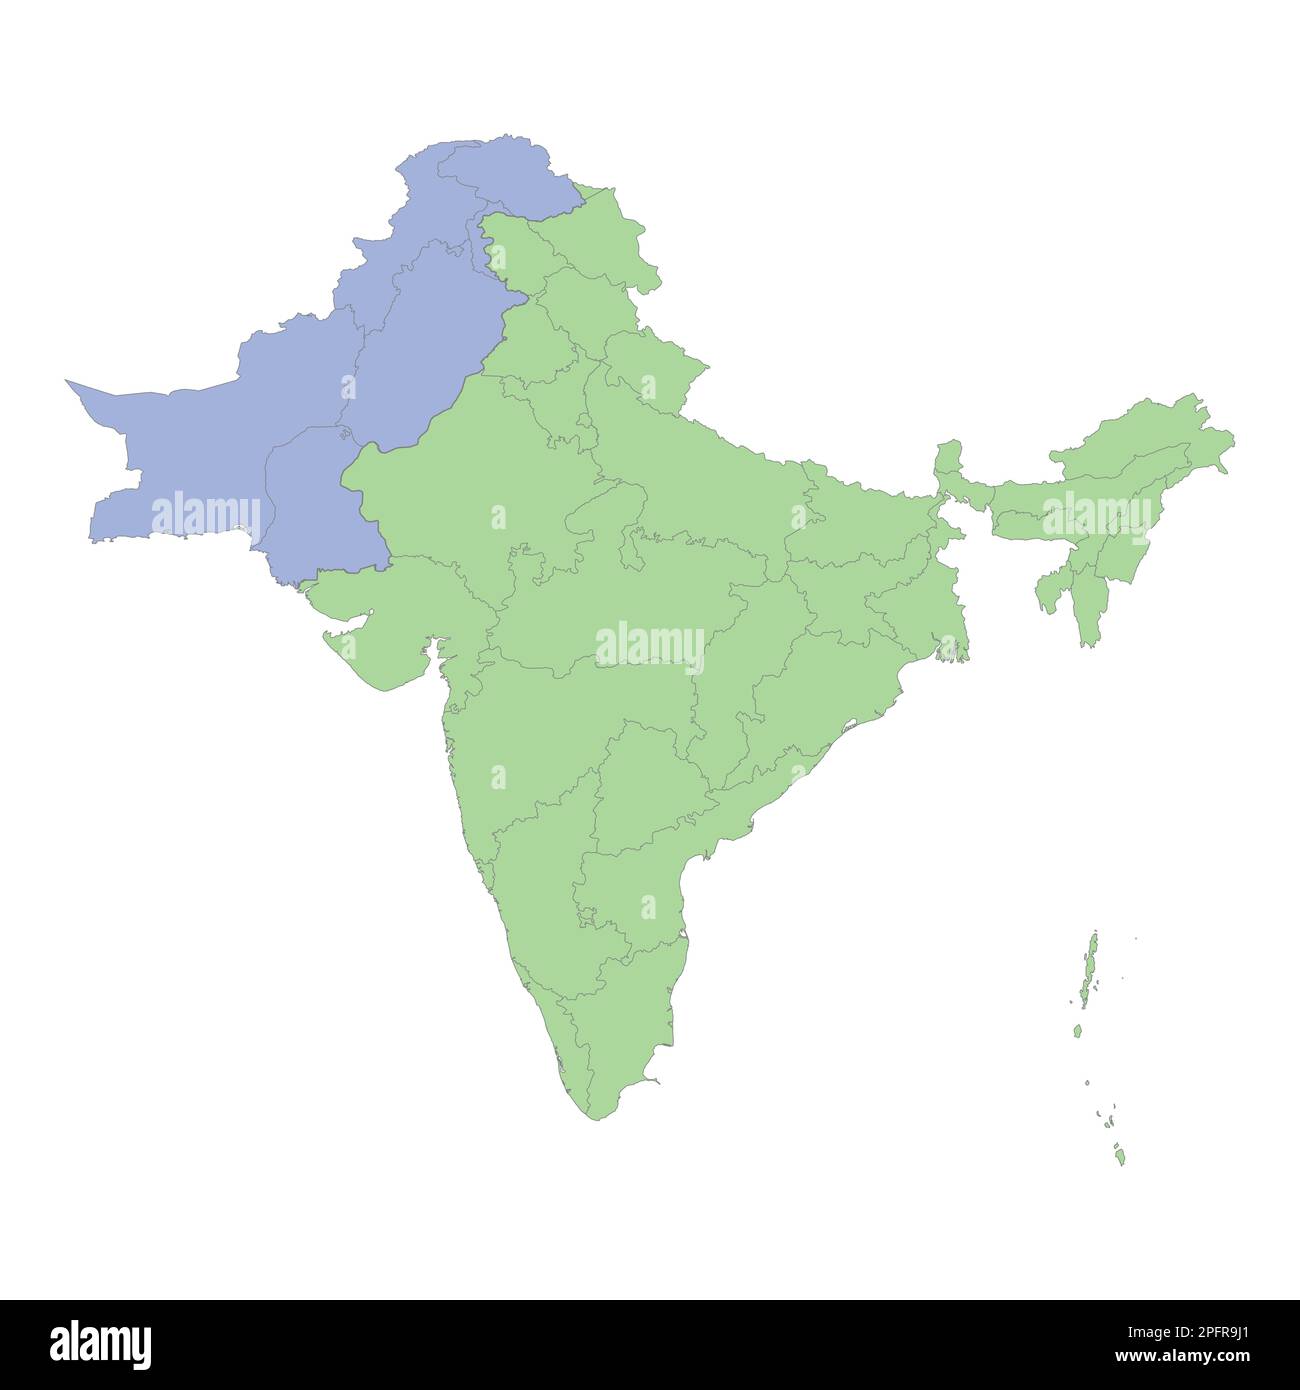 Mappa politica di alta qualità di India e Pakistan con i confini delle regioni o province. Illustrazione vettoriale Illustrazione Vettoriale